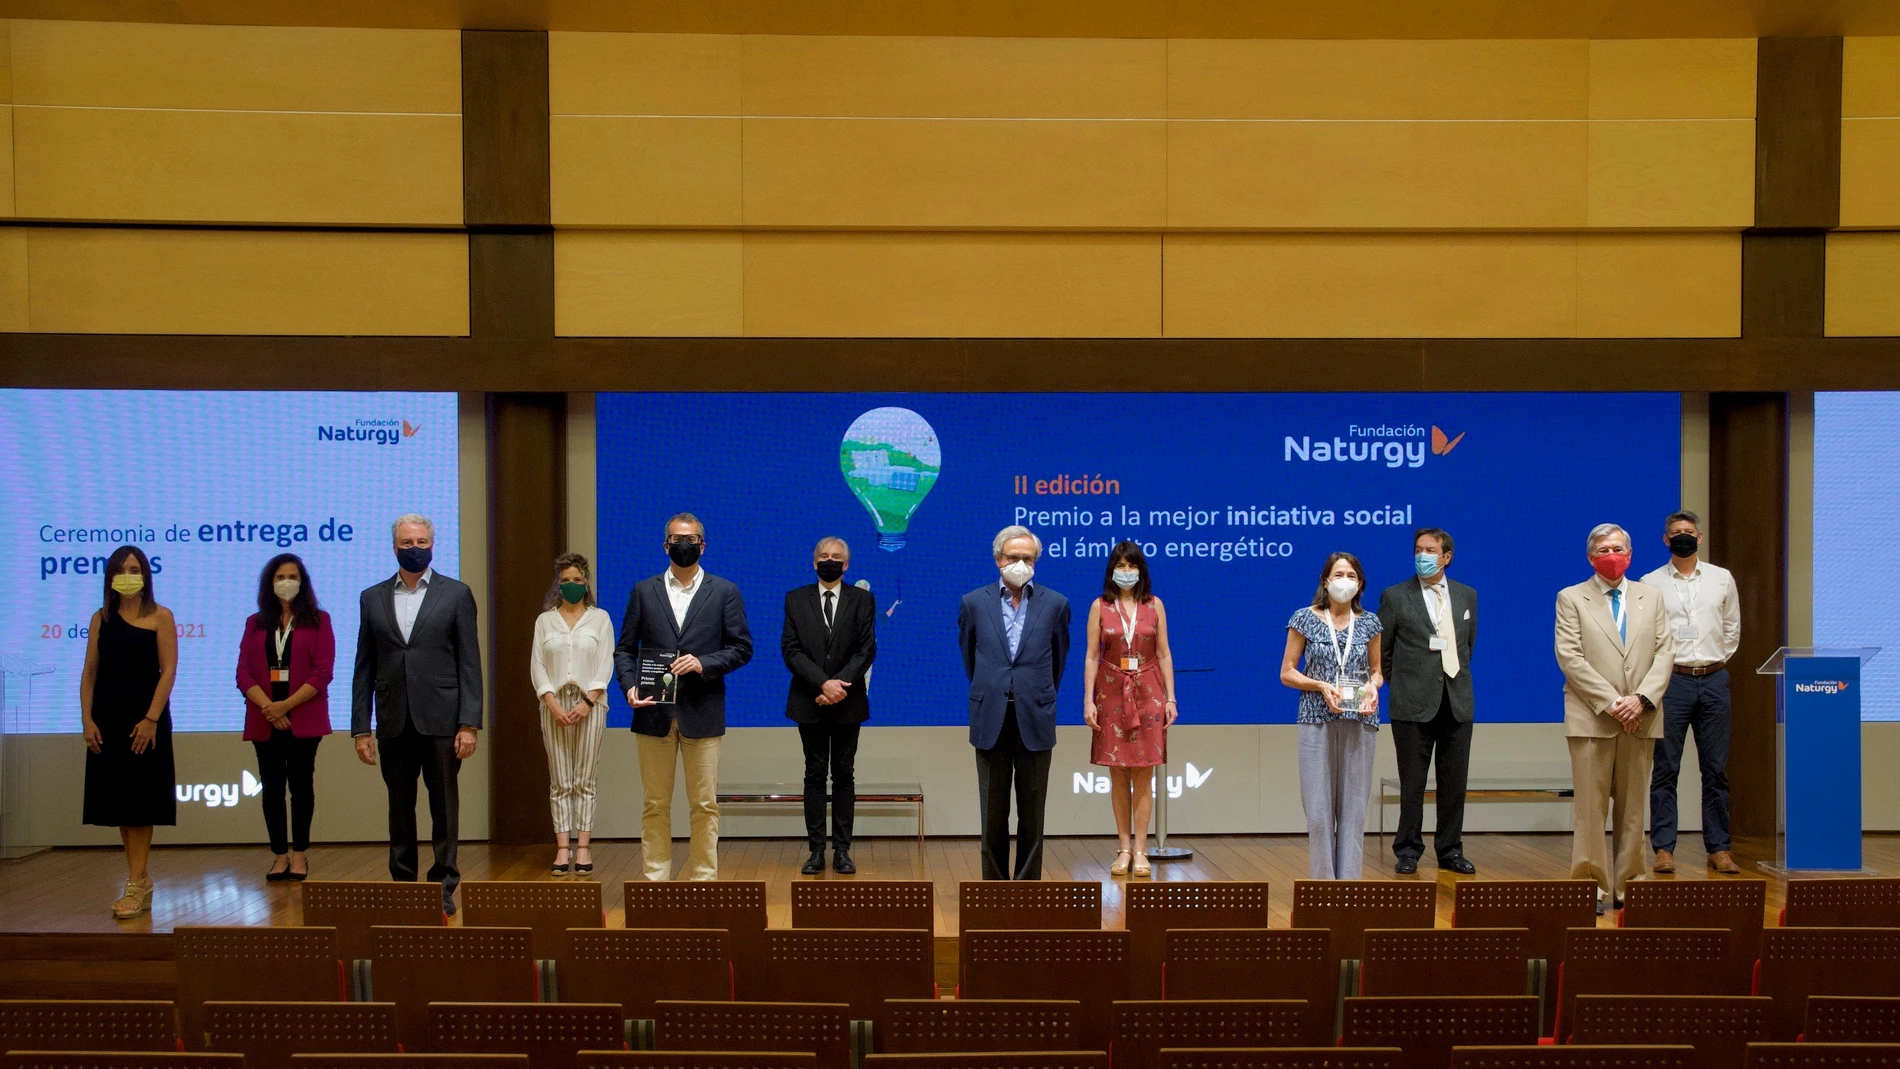 Ganadores y finalistas tras el acto de entrega del Premio a la Mejor Iniciativa Social en el ámbito energético, que otorga la Fundación Naturgy